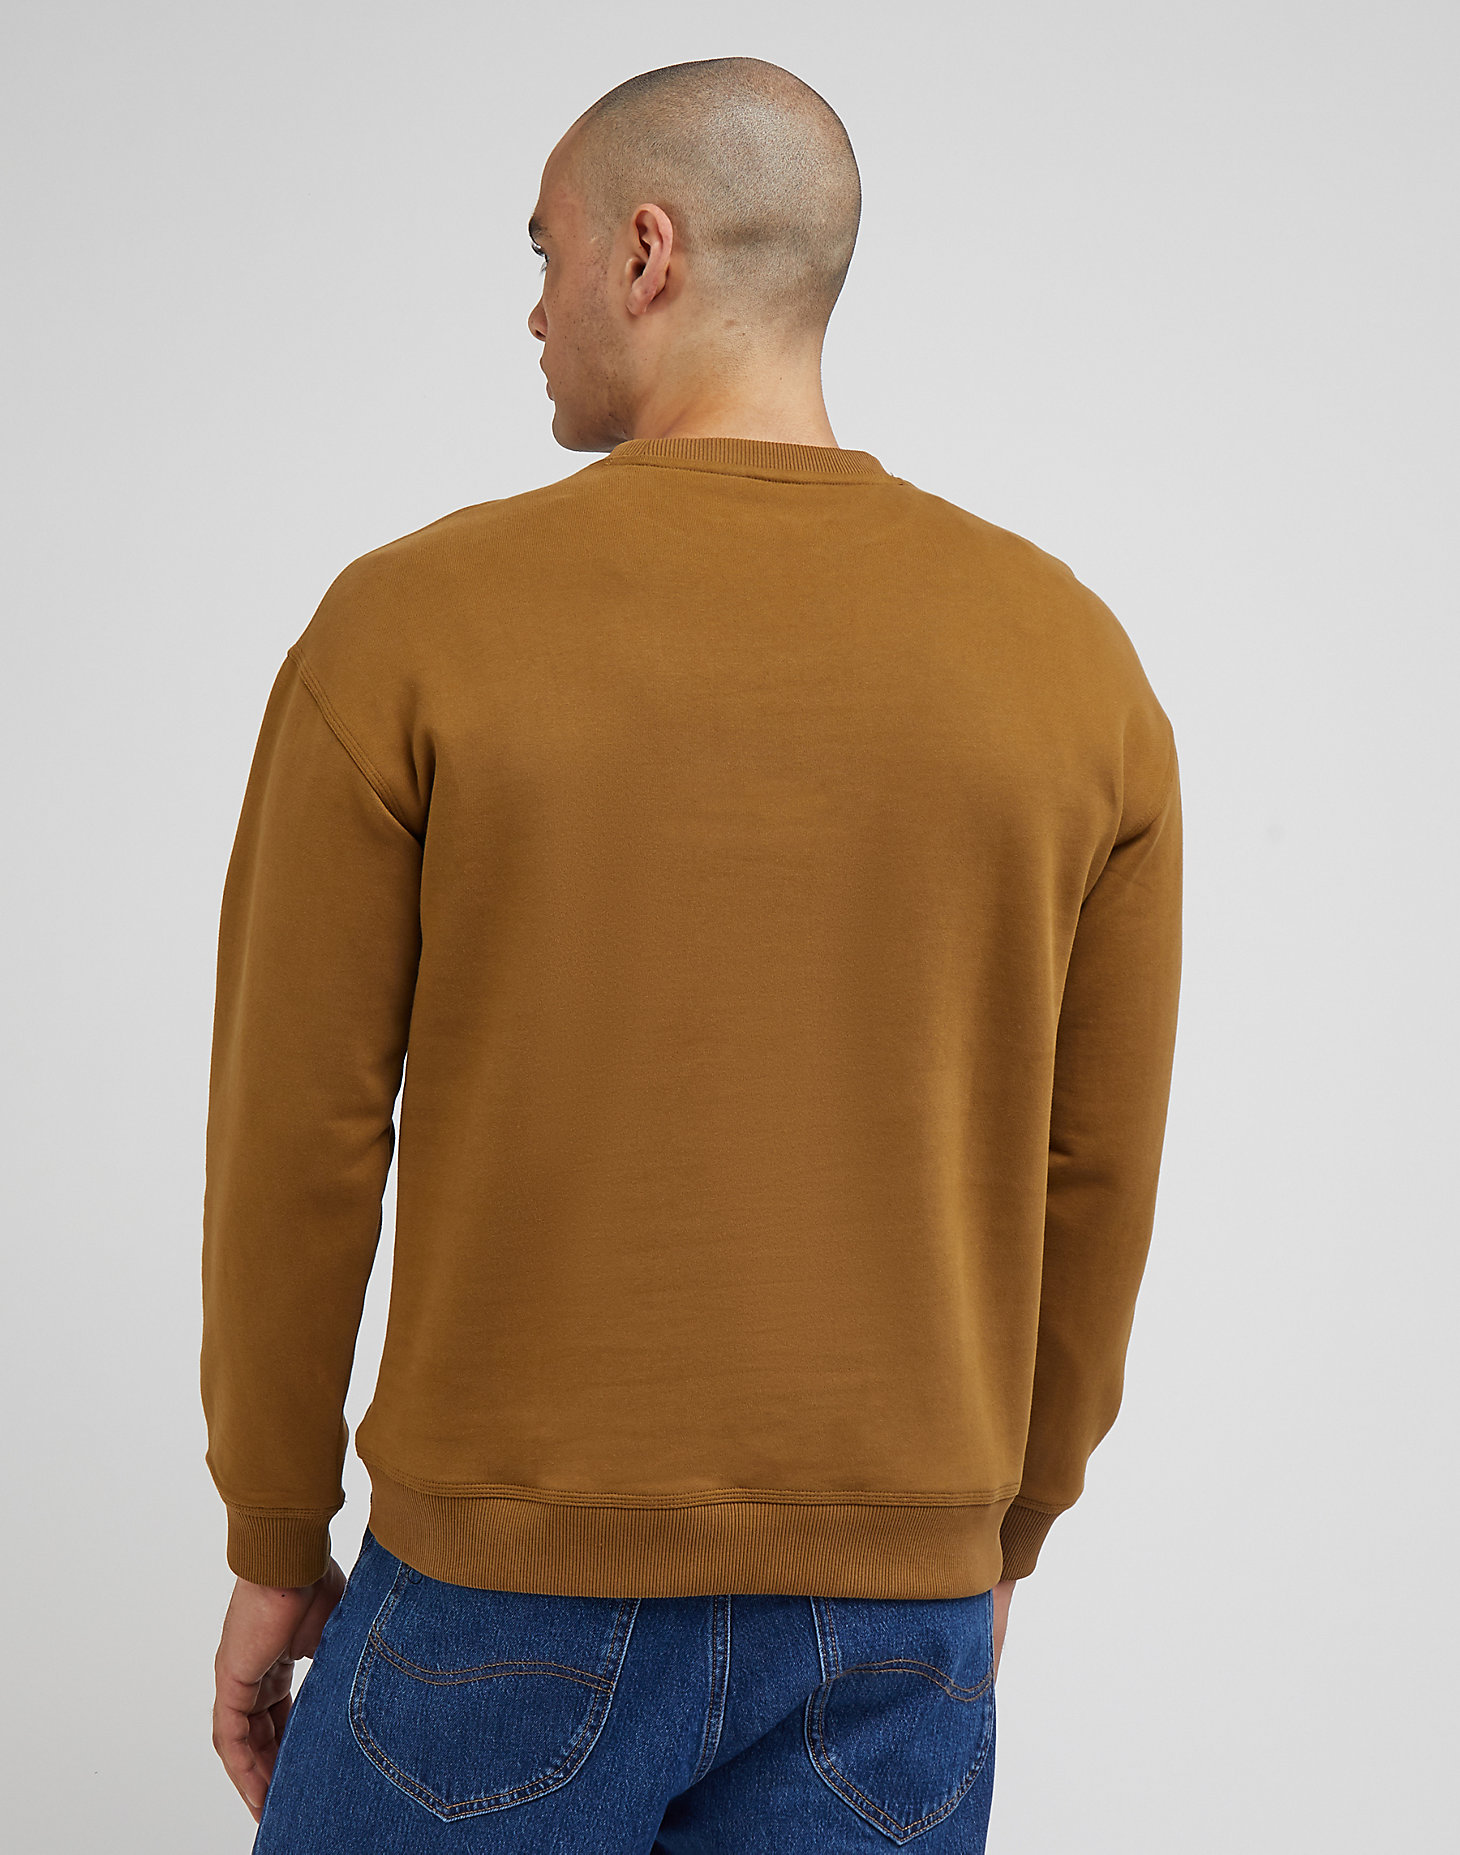 Workwear Sweatshirt in Tumbleweed alternative view 1